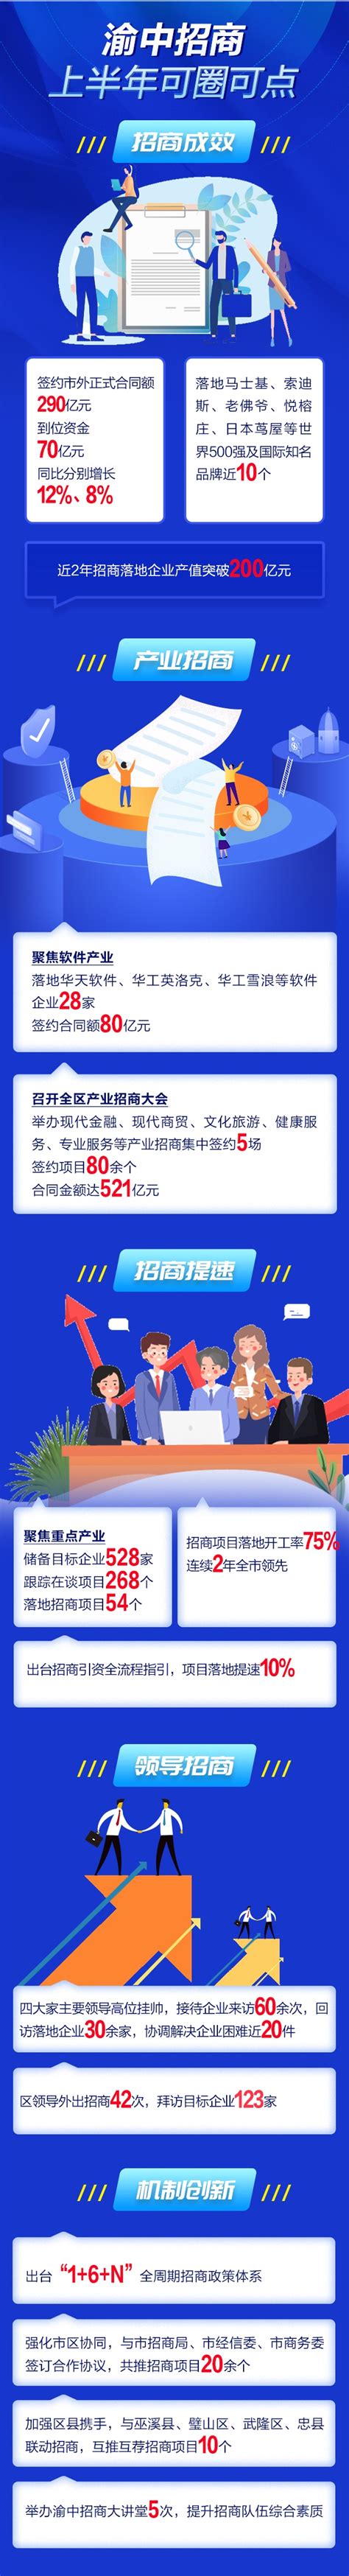 一图速览 渝中区2022上半年招商成效-重庆市招商投资促进局